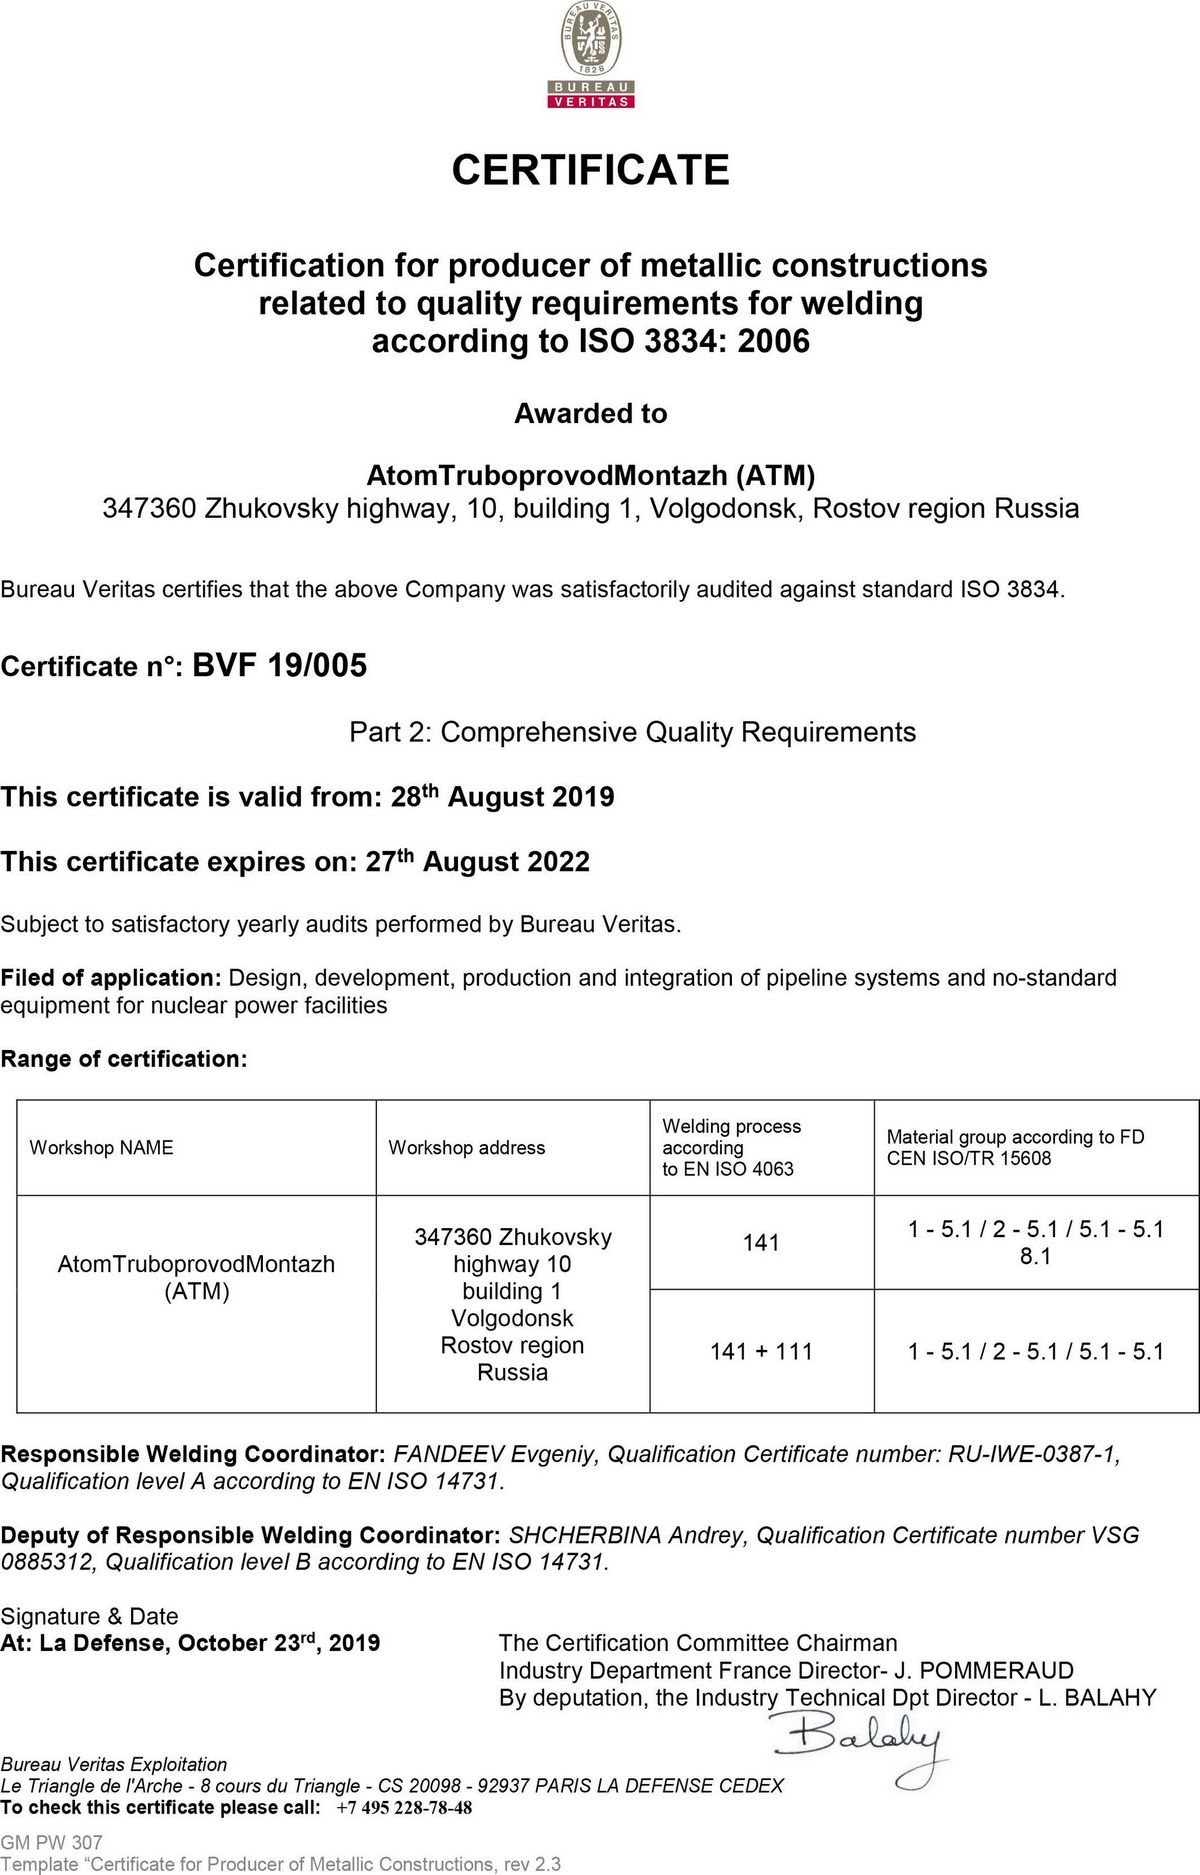 Сертификат №BVF 19_005 от 28.08.19 до 27.08.22